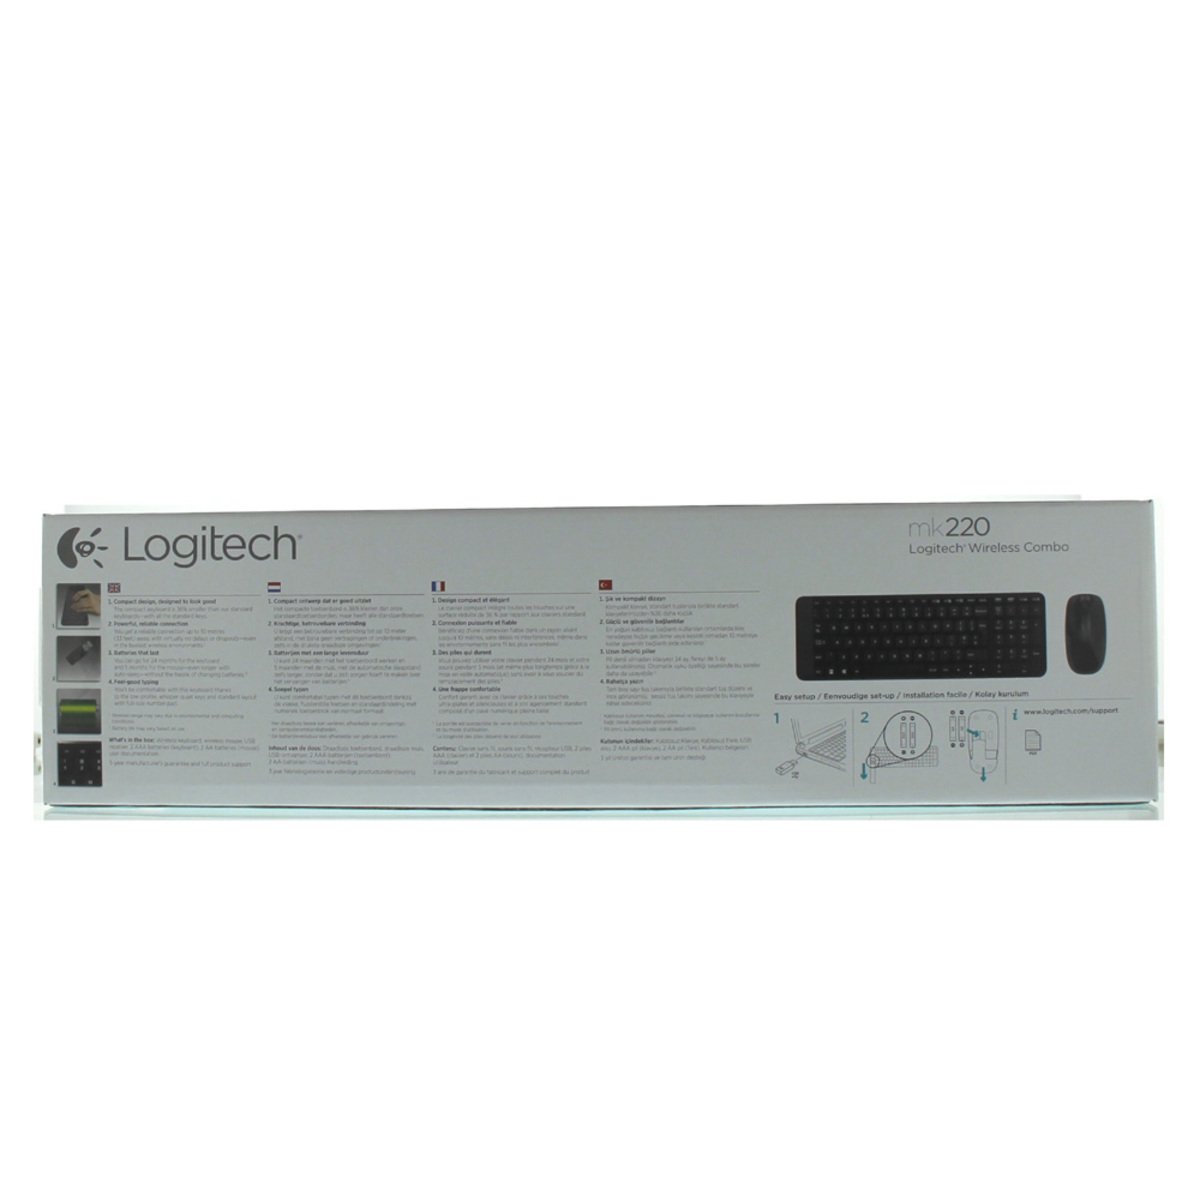 Logitech Wireless keyboard MK220 + Mouse